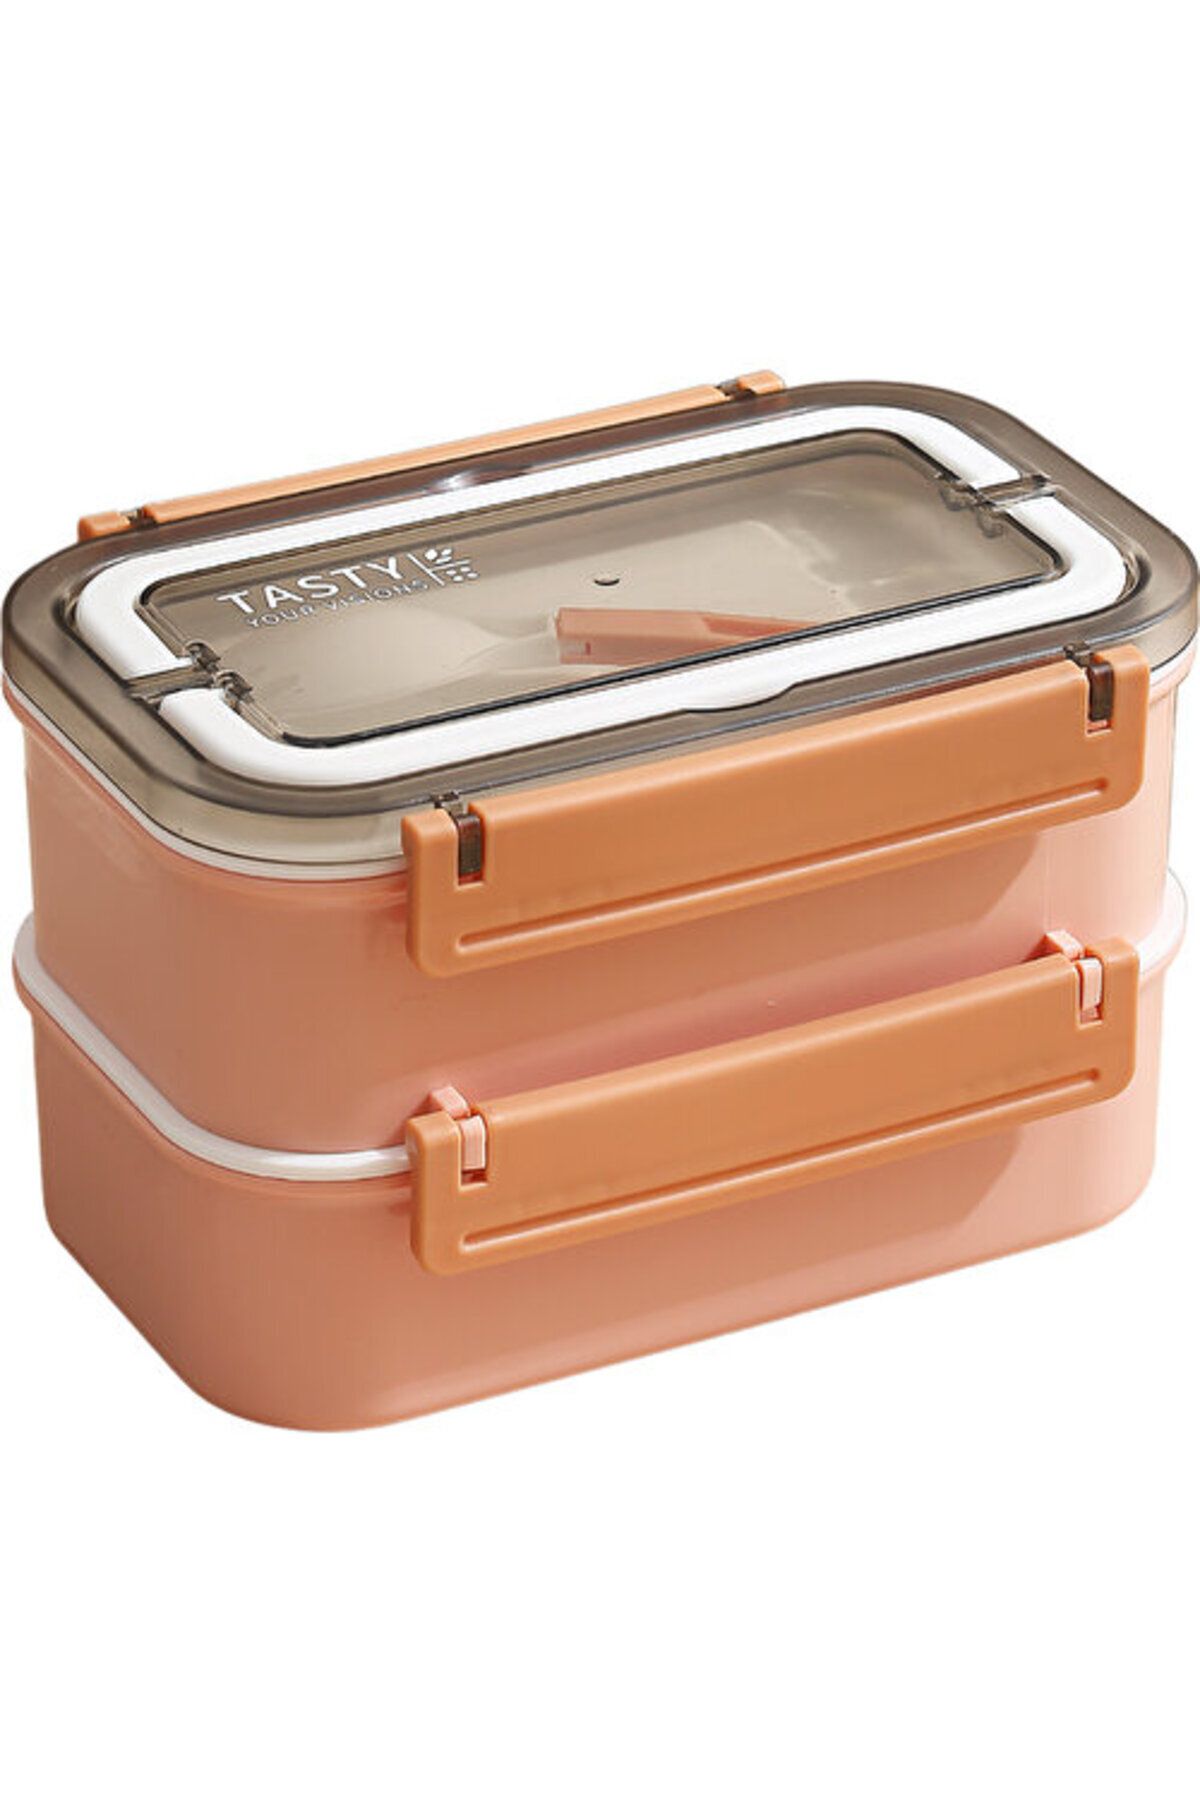 Vagonlife Bento 1600ml Lunchbox Yeni Koleksiyon 2 Katlı 4 Bölmeli Çelik Sefer Tası Yemek Kutusu